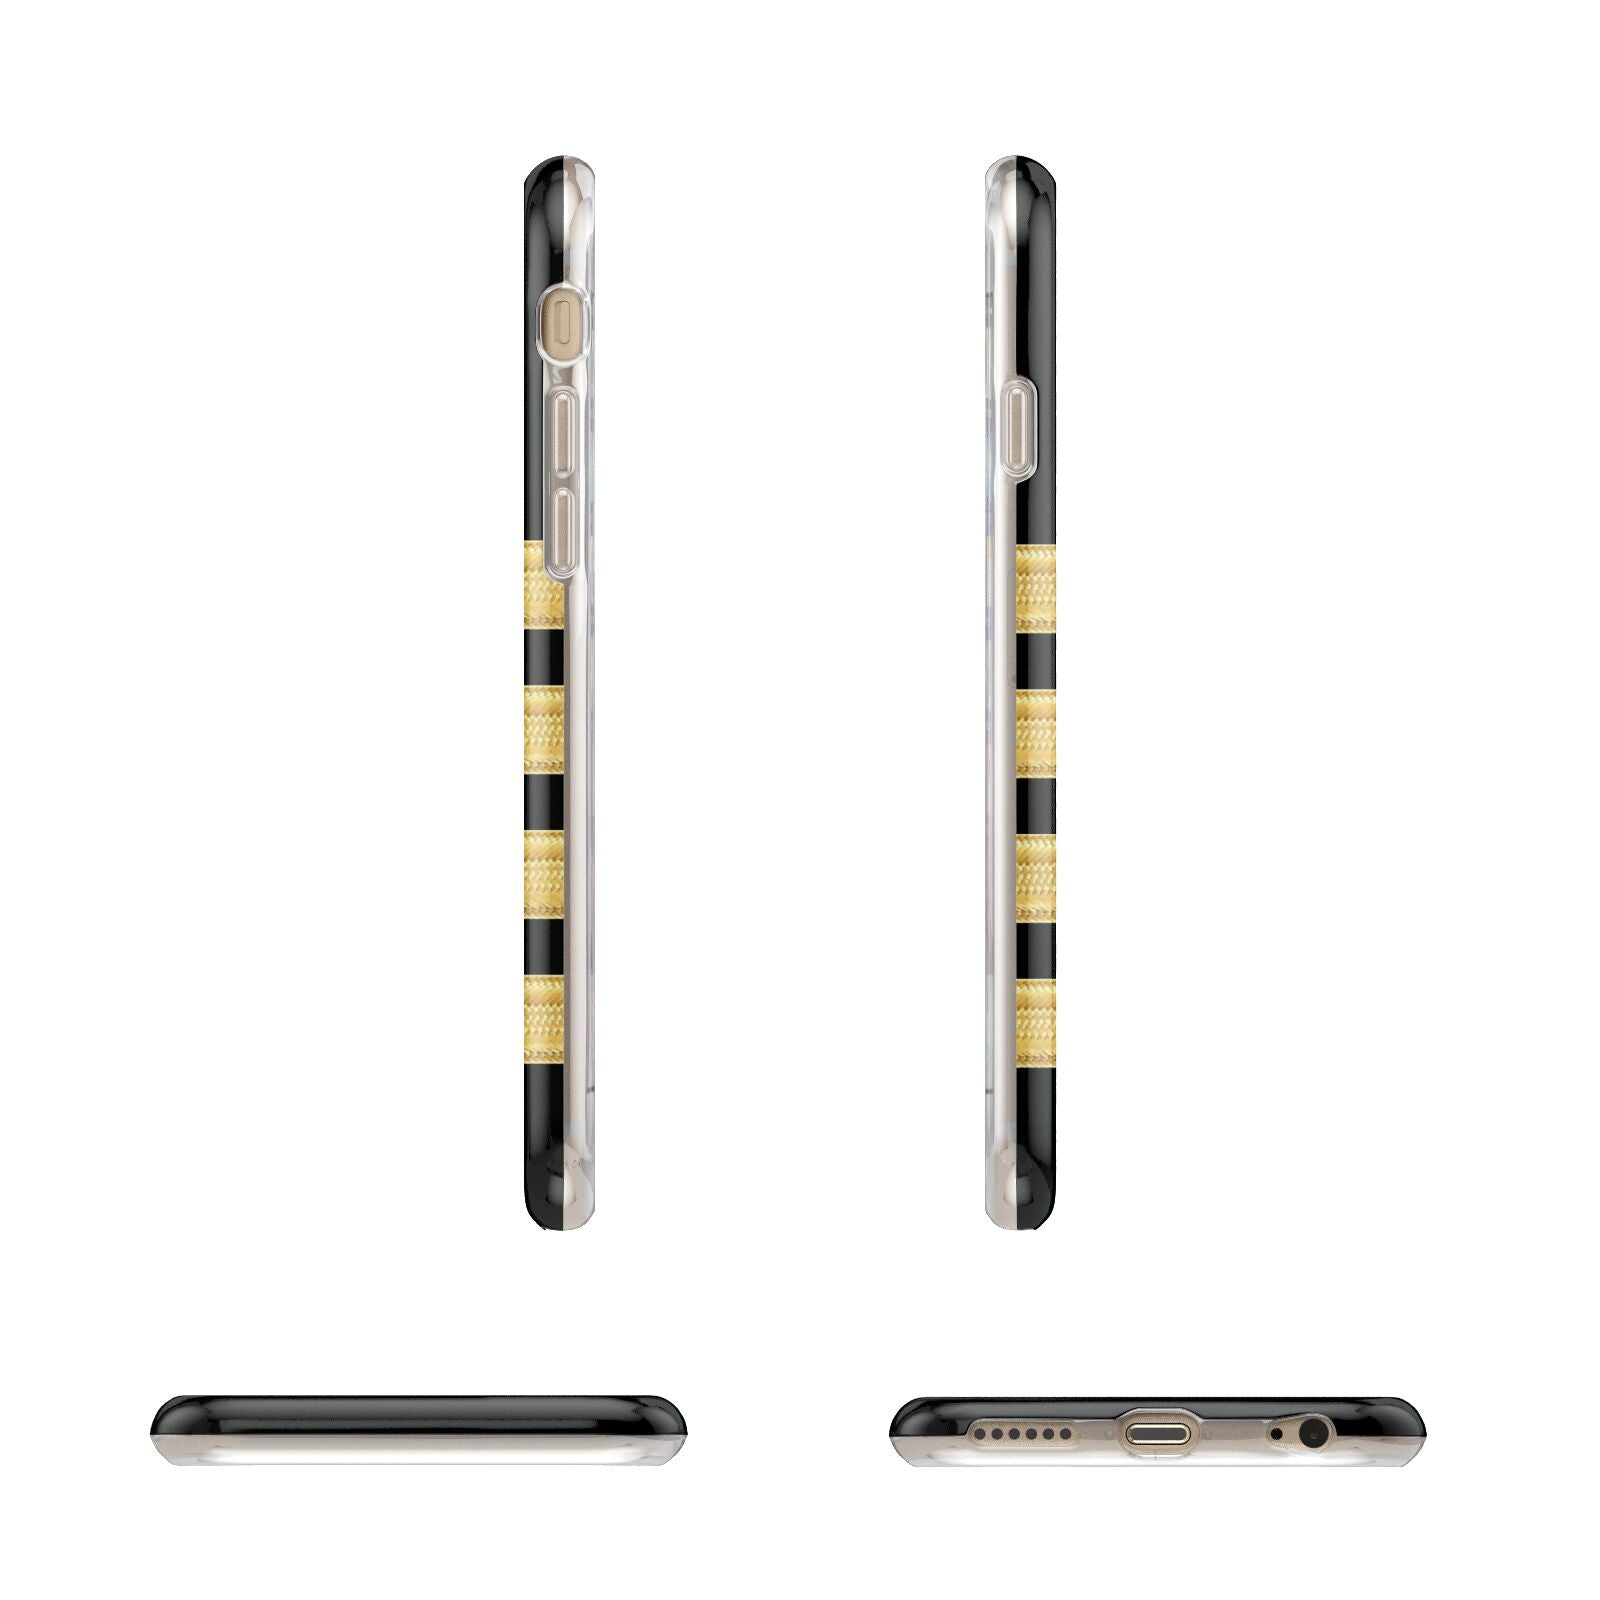 Black Gold Pilot Stripes Apple iPhone 6 3D Wrap Tough Case Alternative Image Angles